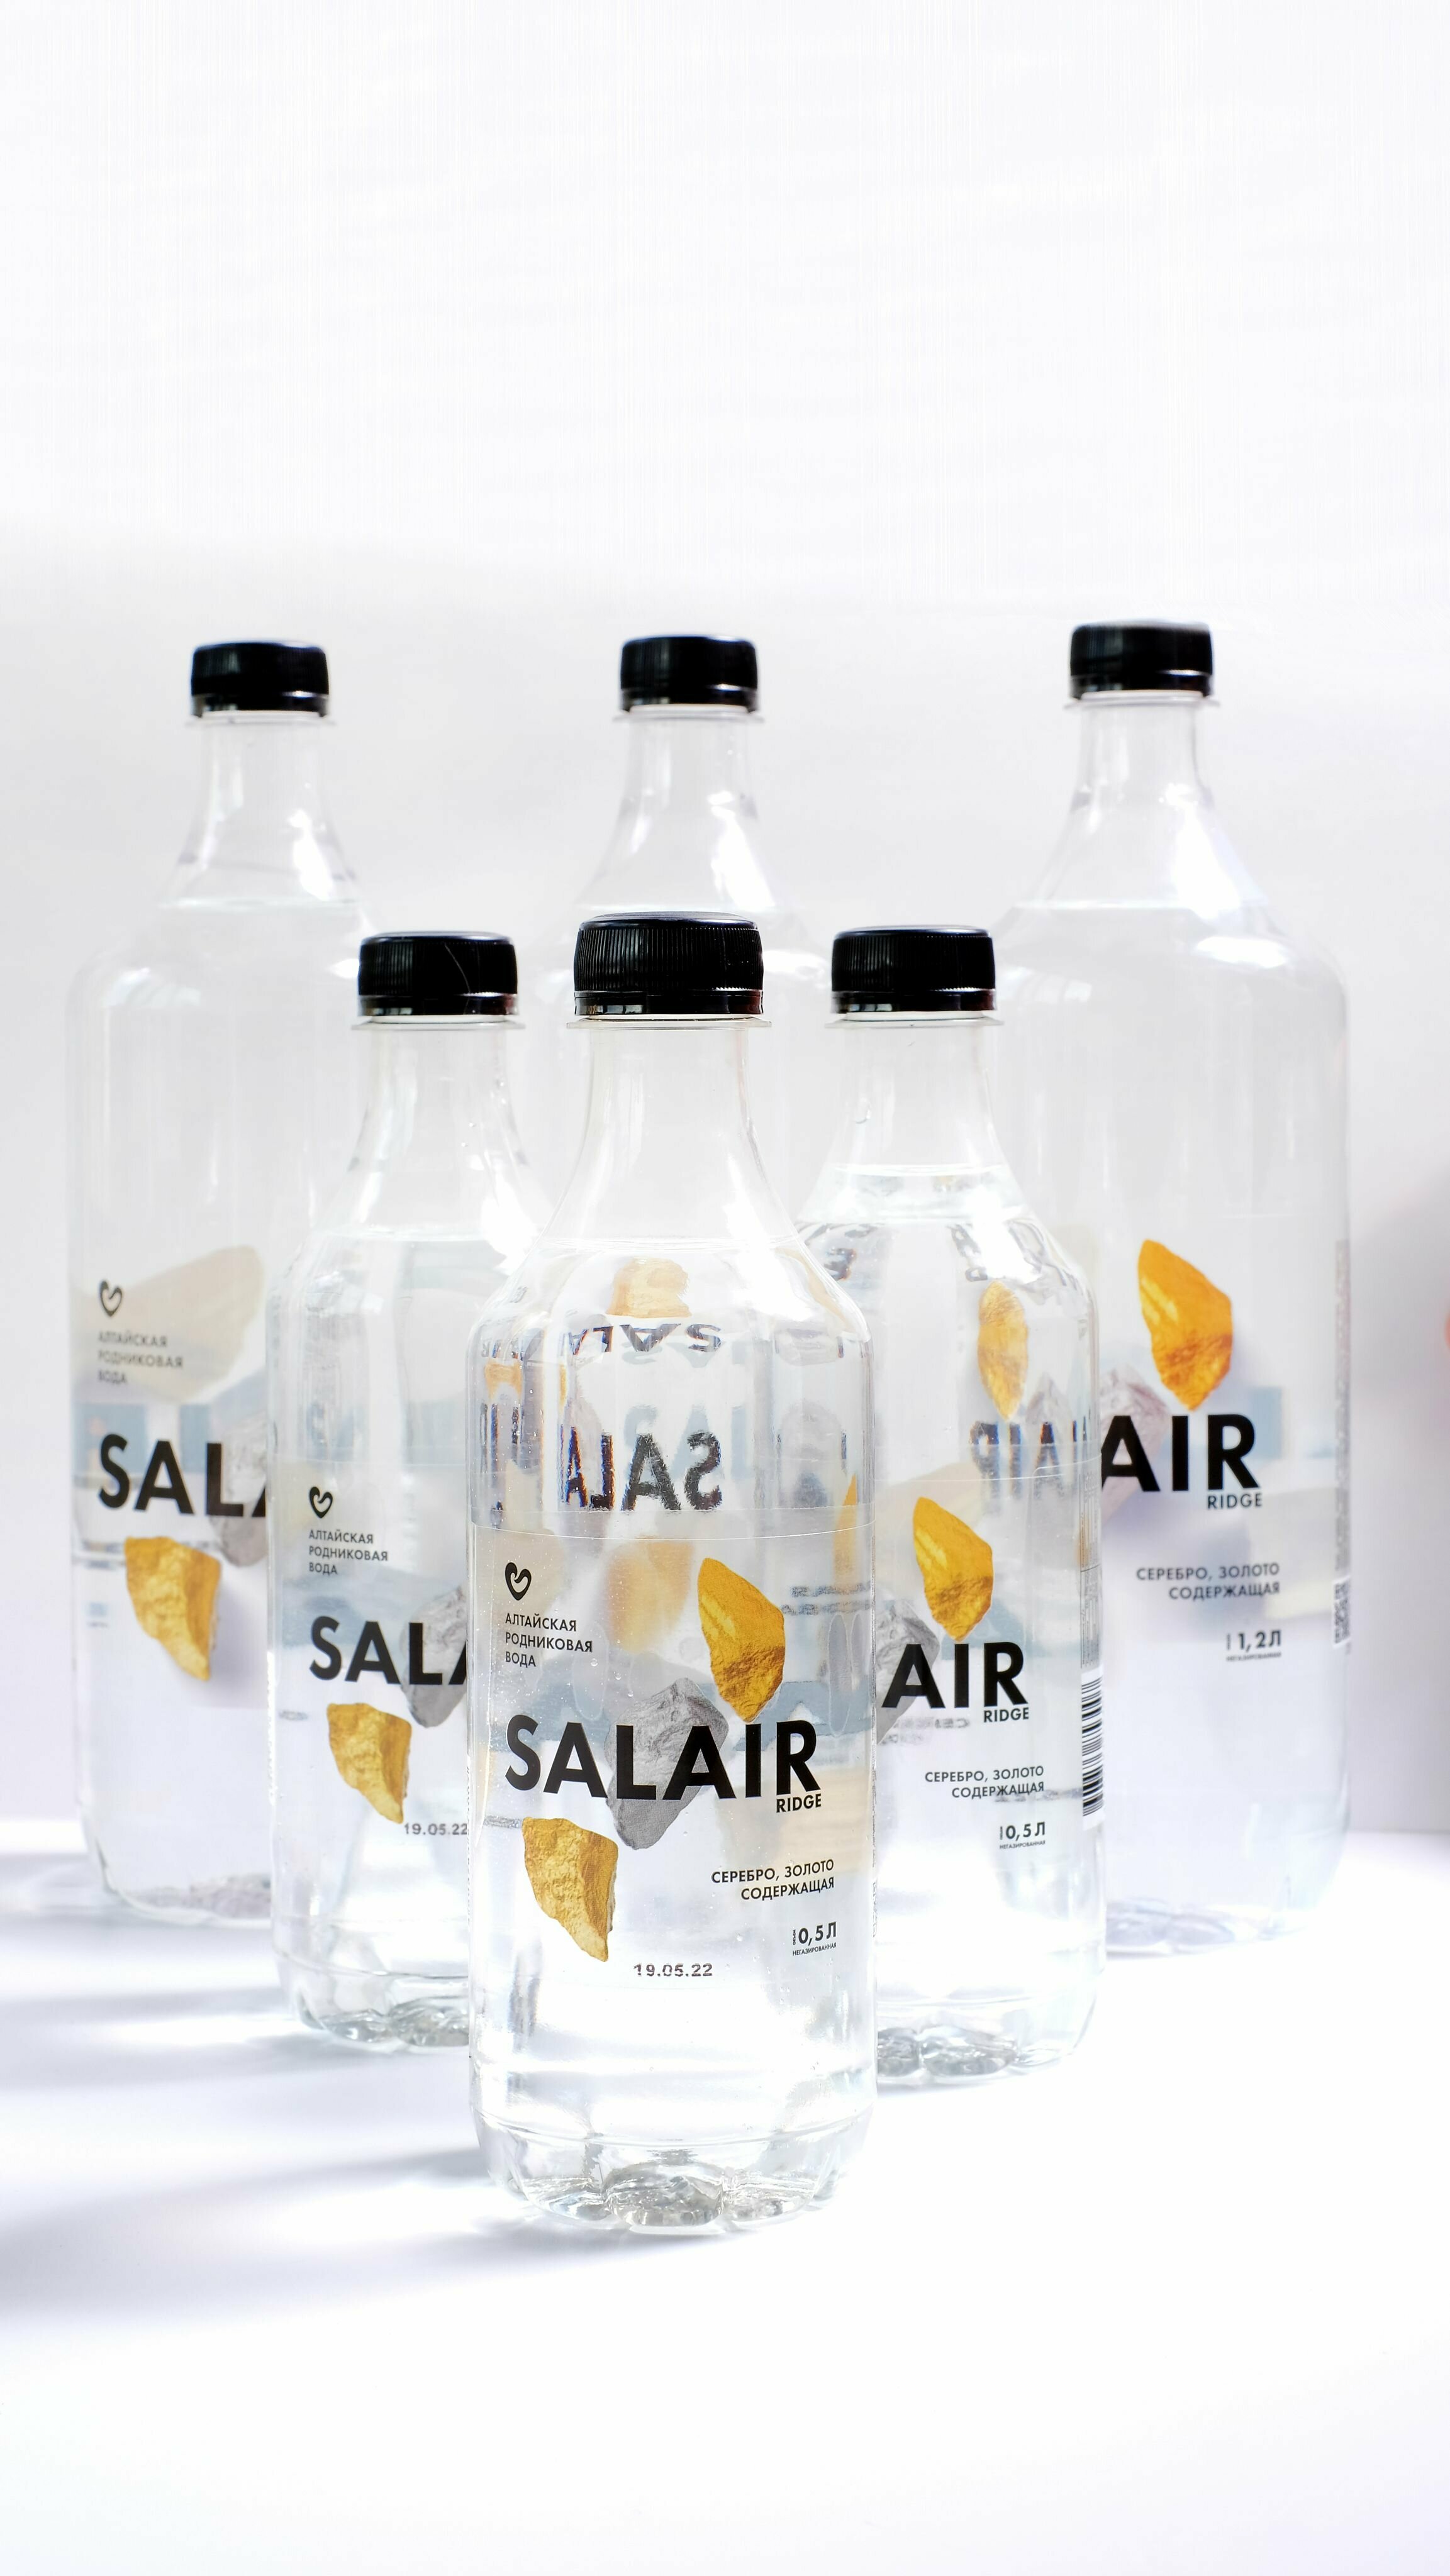 Вода SALAIR RIDGE с золотом и серебром питьевая высшей категории качества, негазированная, 0,5 л - фотография № 7